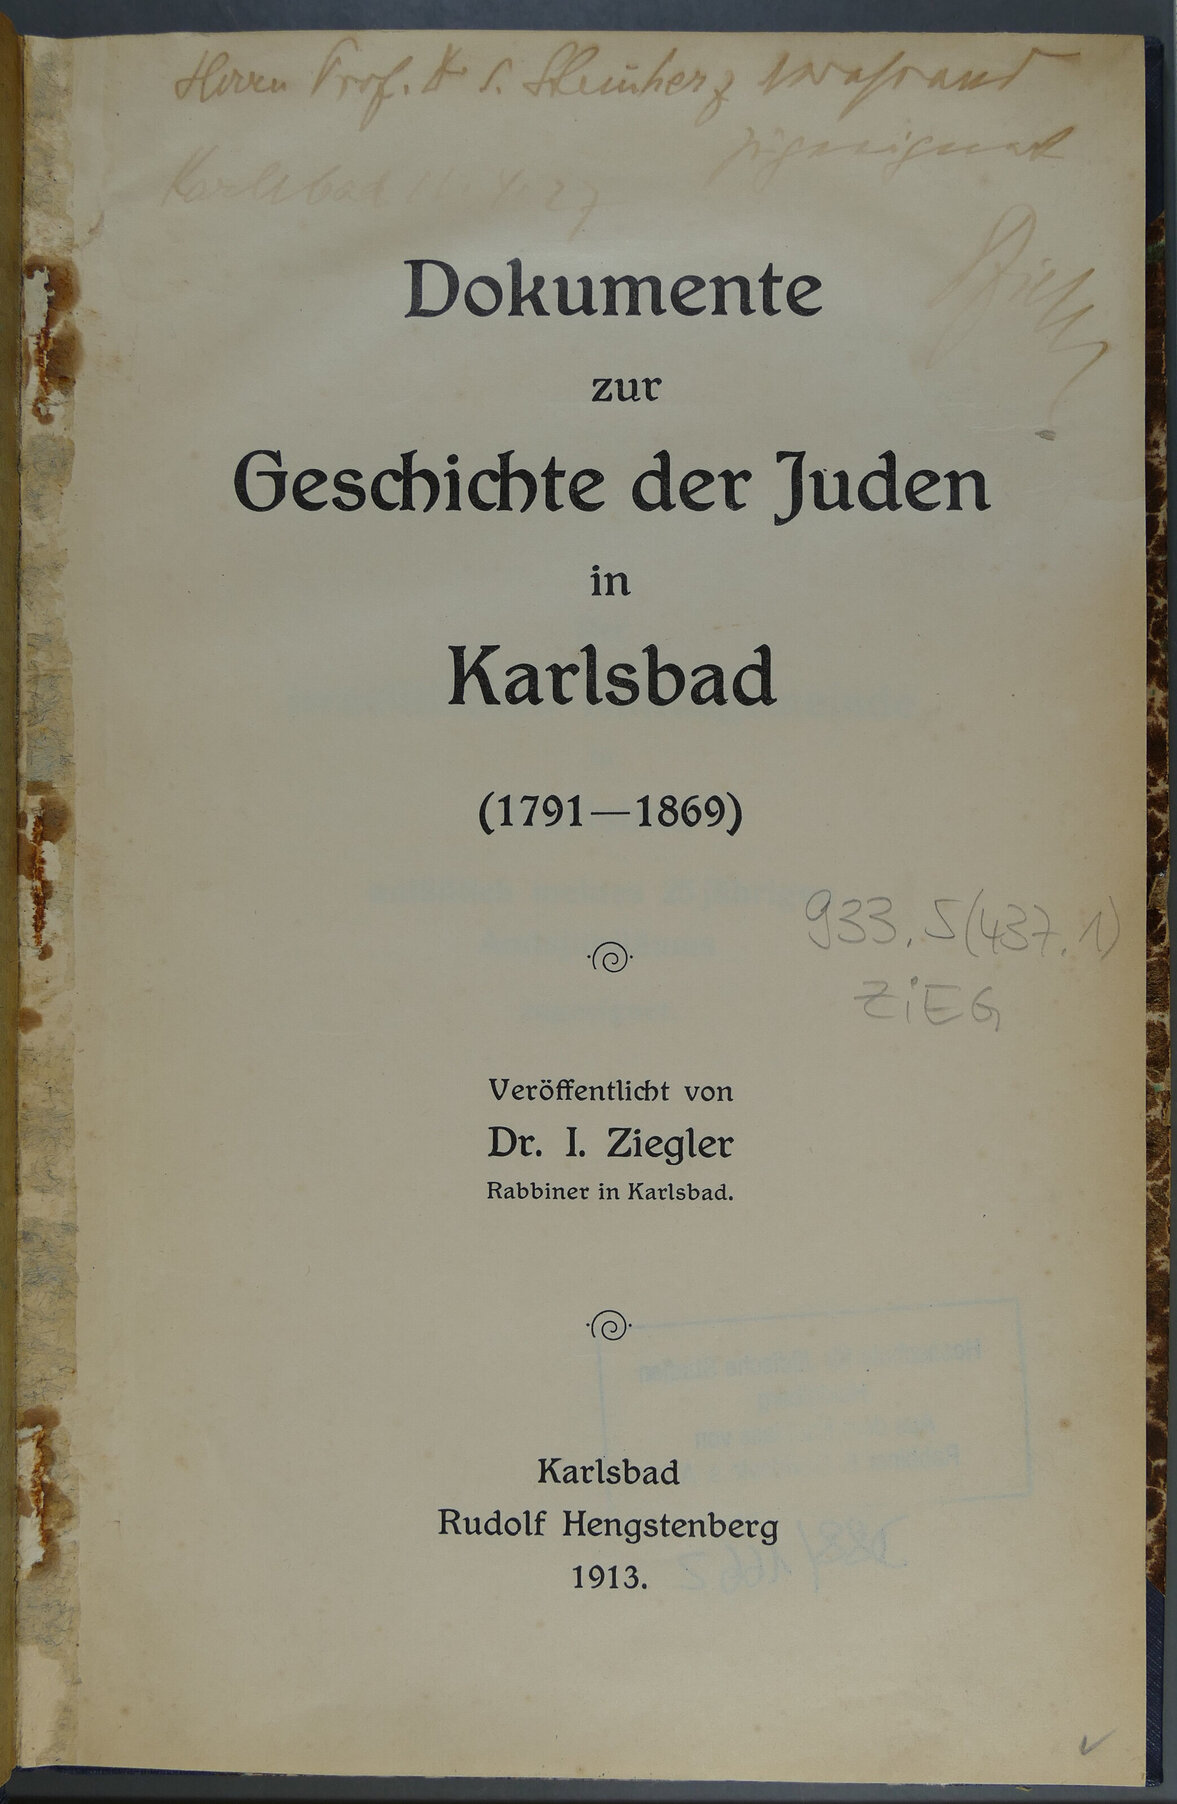 Titel Seite des Buches Dokumente zur Geschichte der Juden in Karlsbad (1791-1869). Fener sieht man noch das dass Buch von Dr. I. Ziegler veröffentlicht wurde der Rabbiner in Karlsbad war. Sowie den Verlag Rudolf Hengstenberg Karlsbad 1913